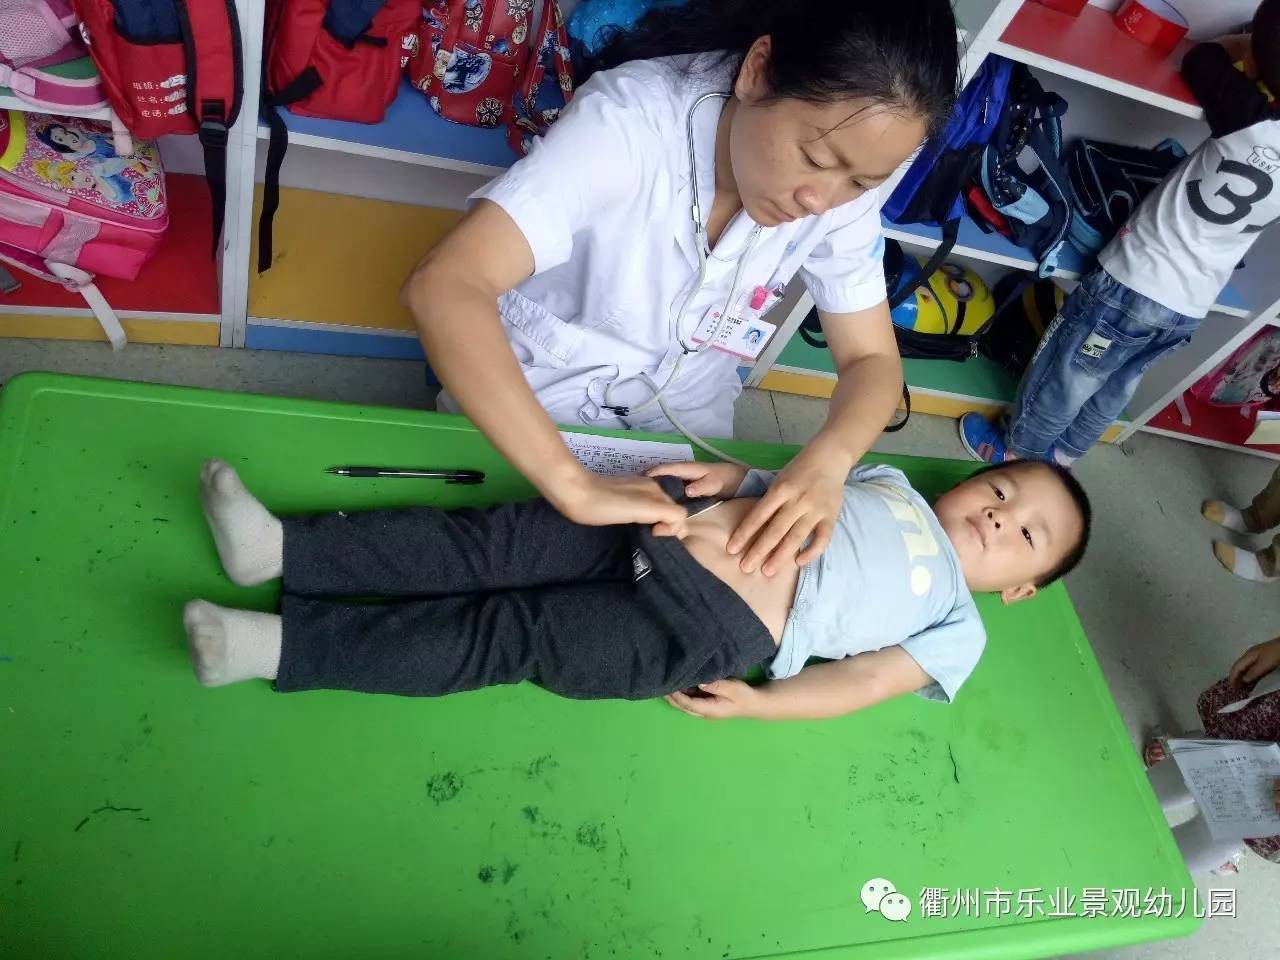 医生正在为孩子做身体检查,瞧小家伙多听话呀,躺着医生面前.